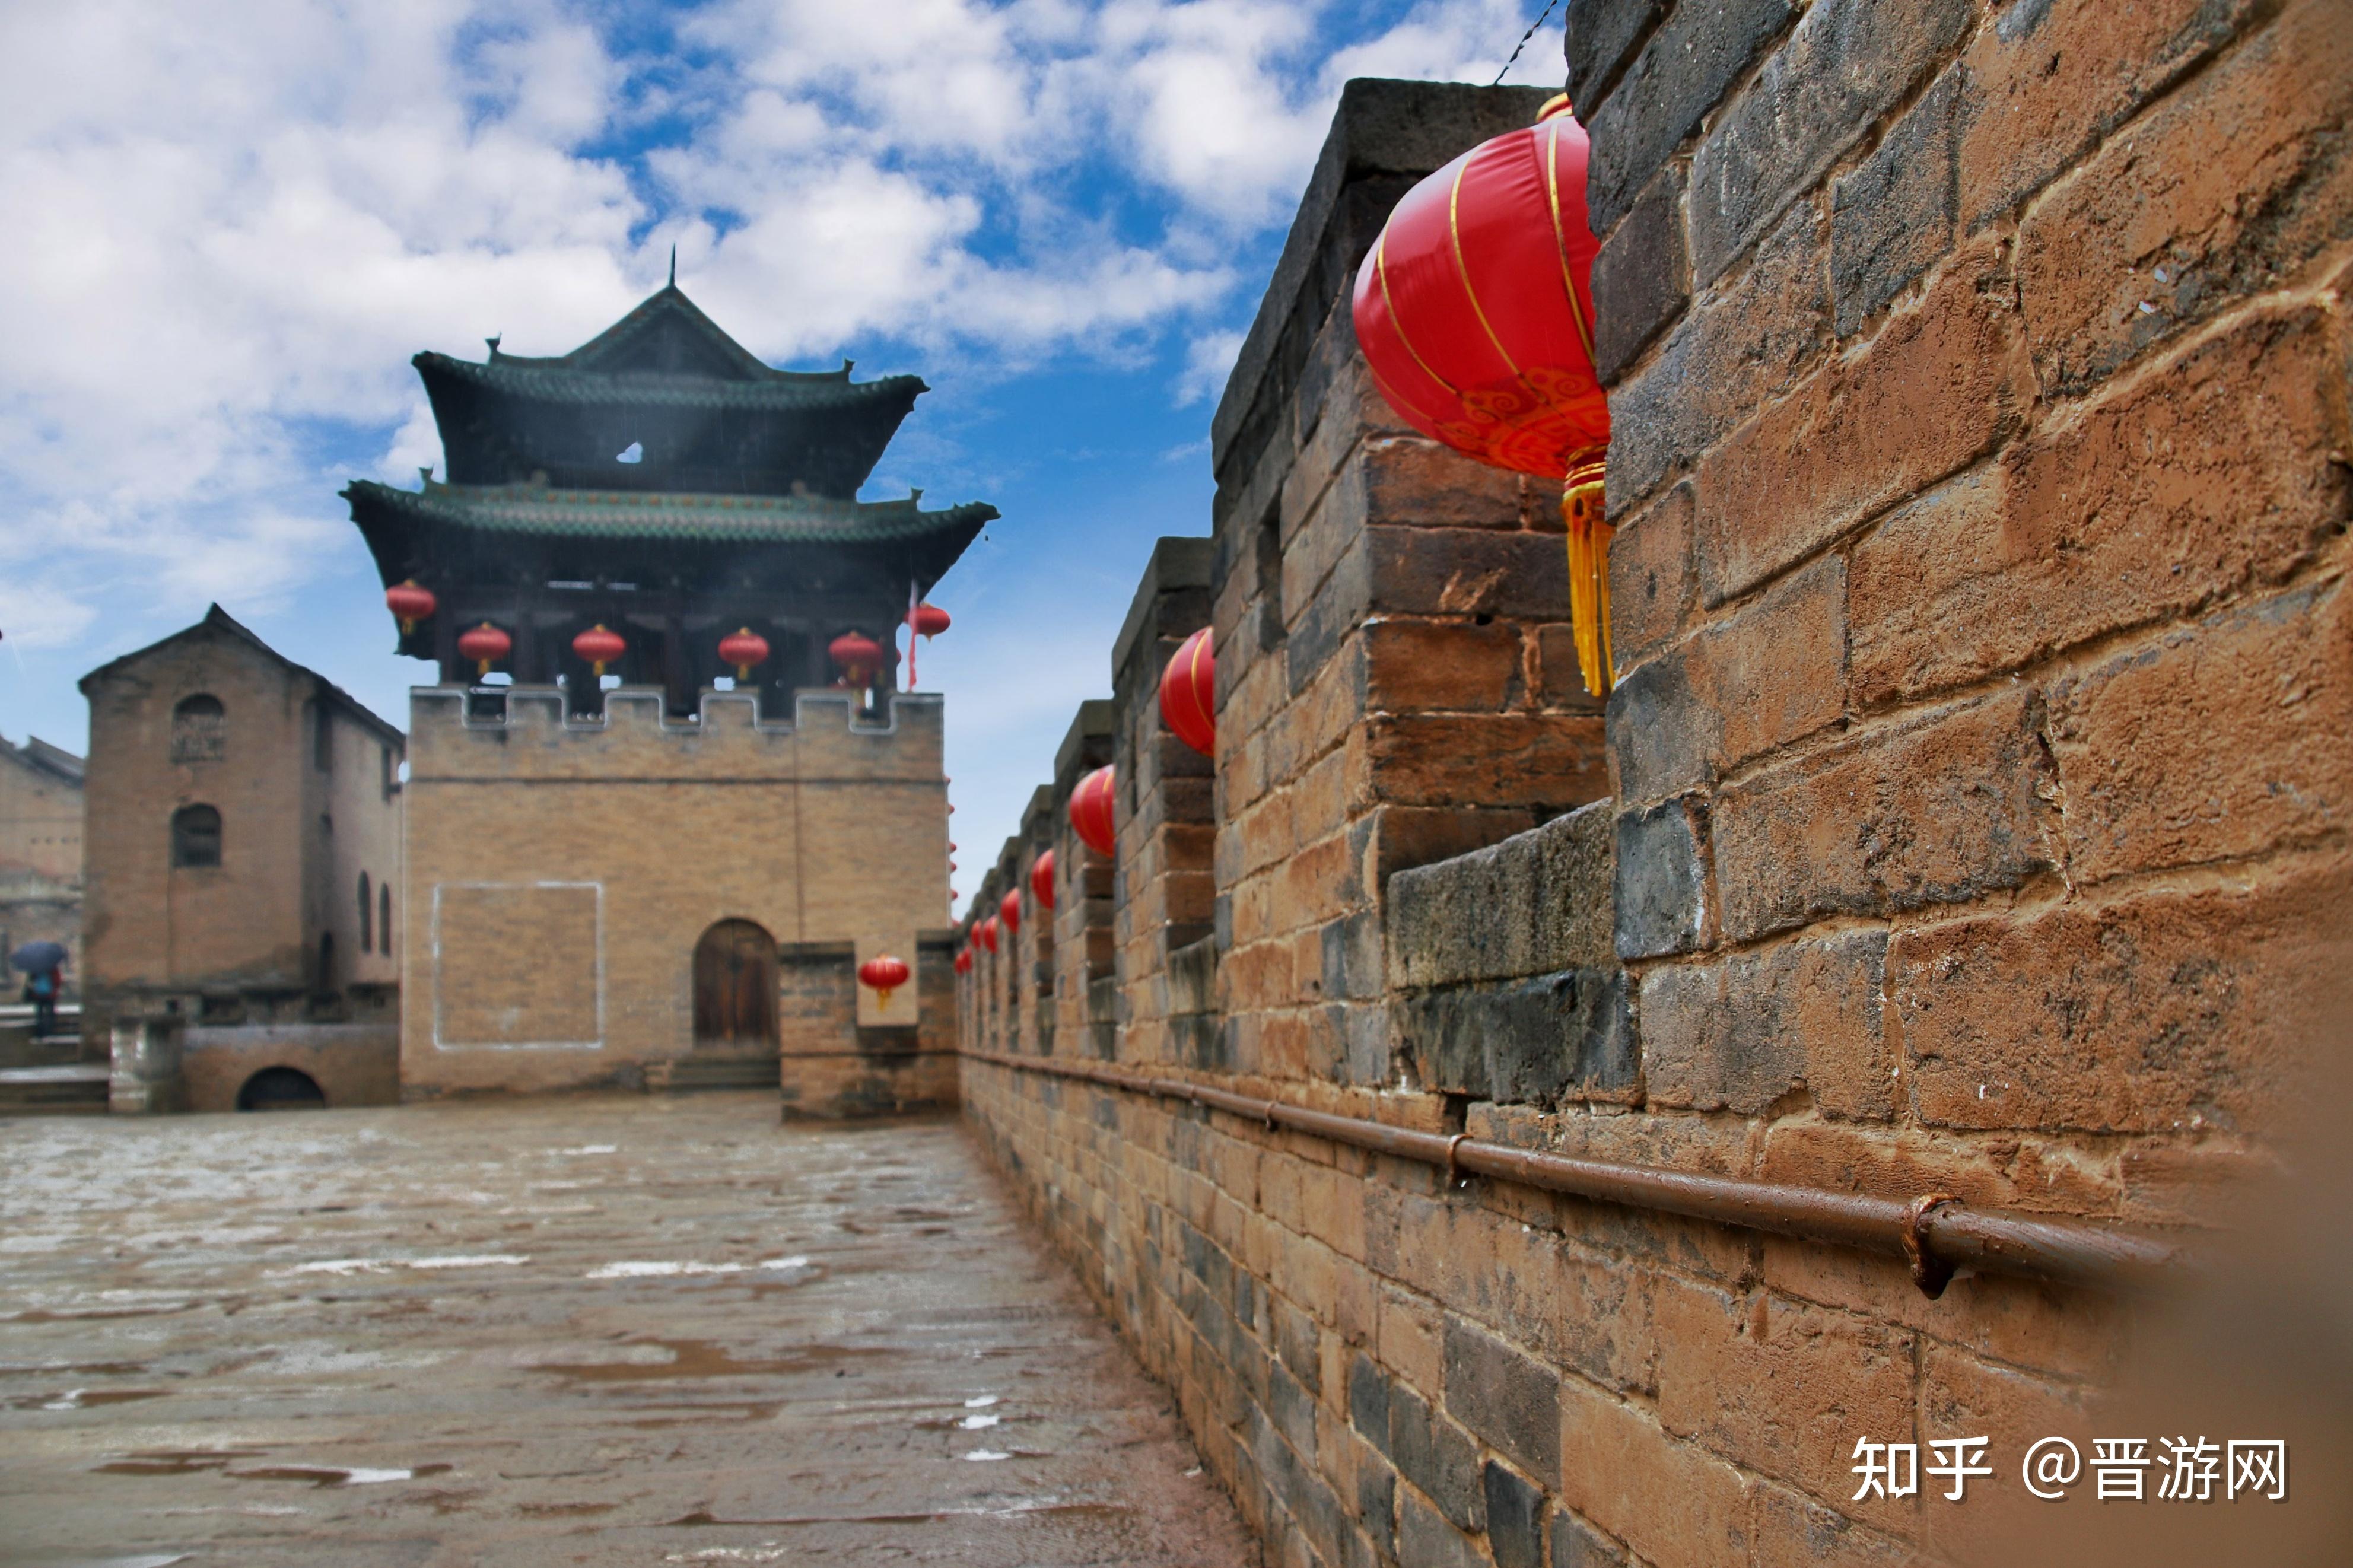 中国北方乡村第一明代古城堡——湘峪古堡——张俊波摄影作品